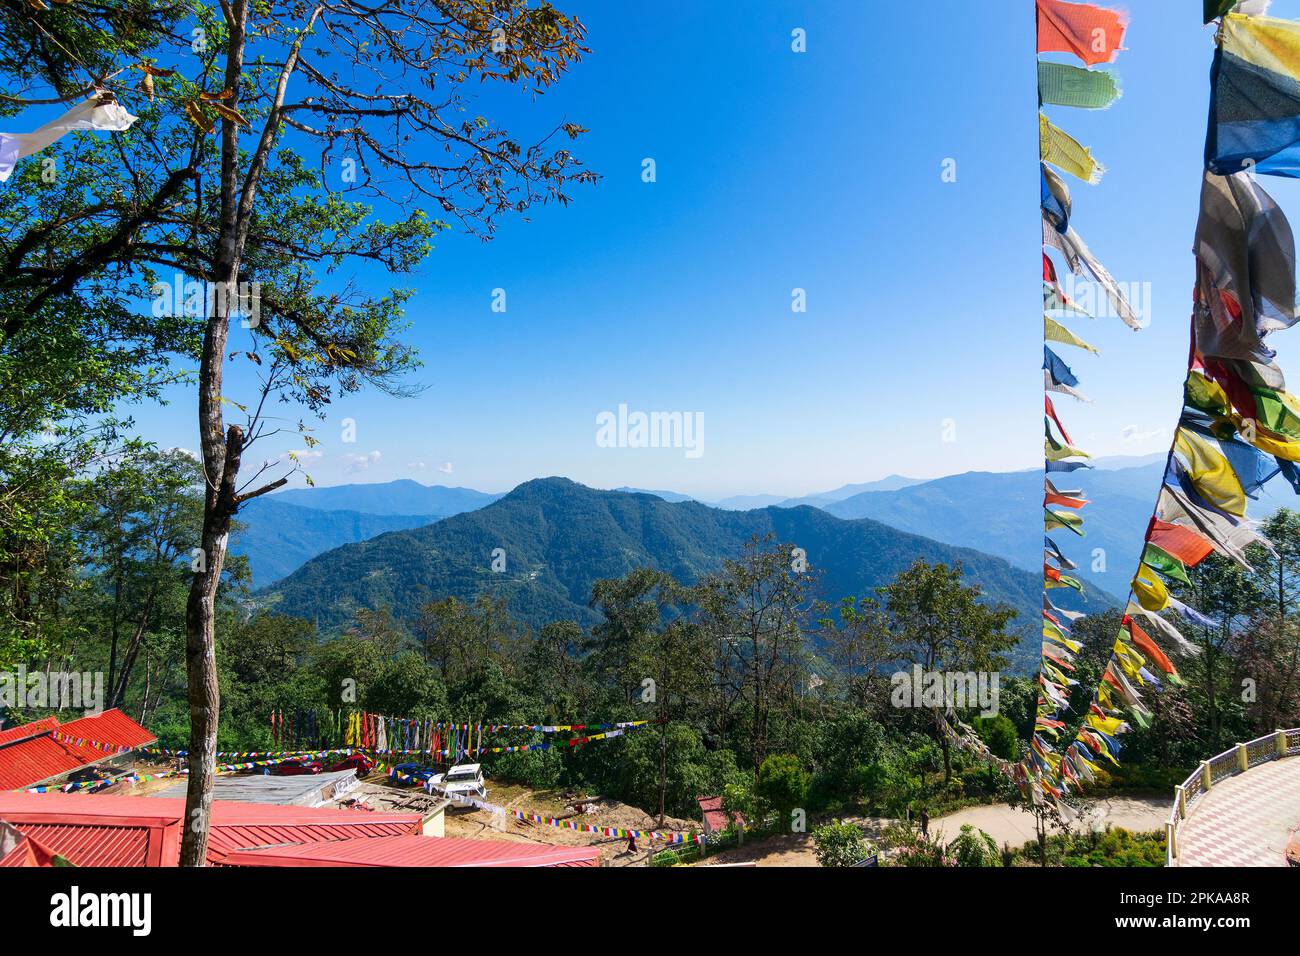 Wunderschöne Vorderansicht des Samdruptse-Klosters mit Himalaya-Bergen im Hintergrund. Samdruptse ist eine buddhistische Gedenkstatue in Sikkim, Indien. Stockfoto